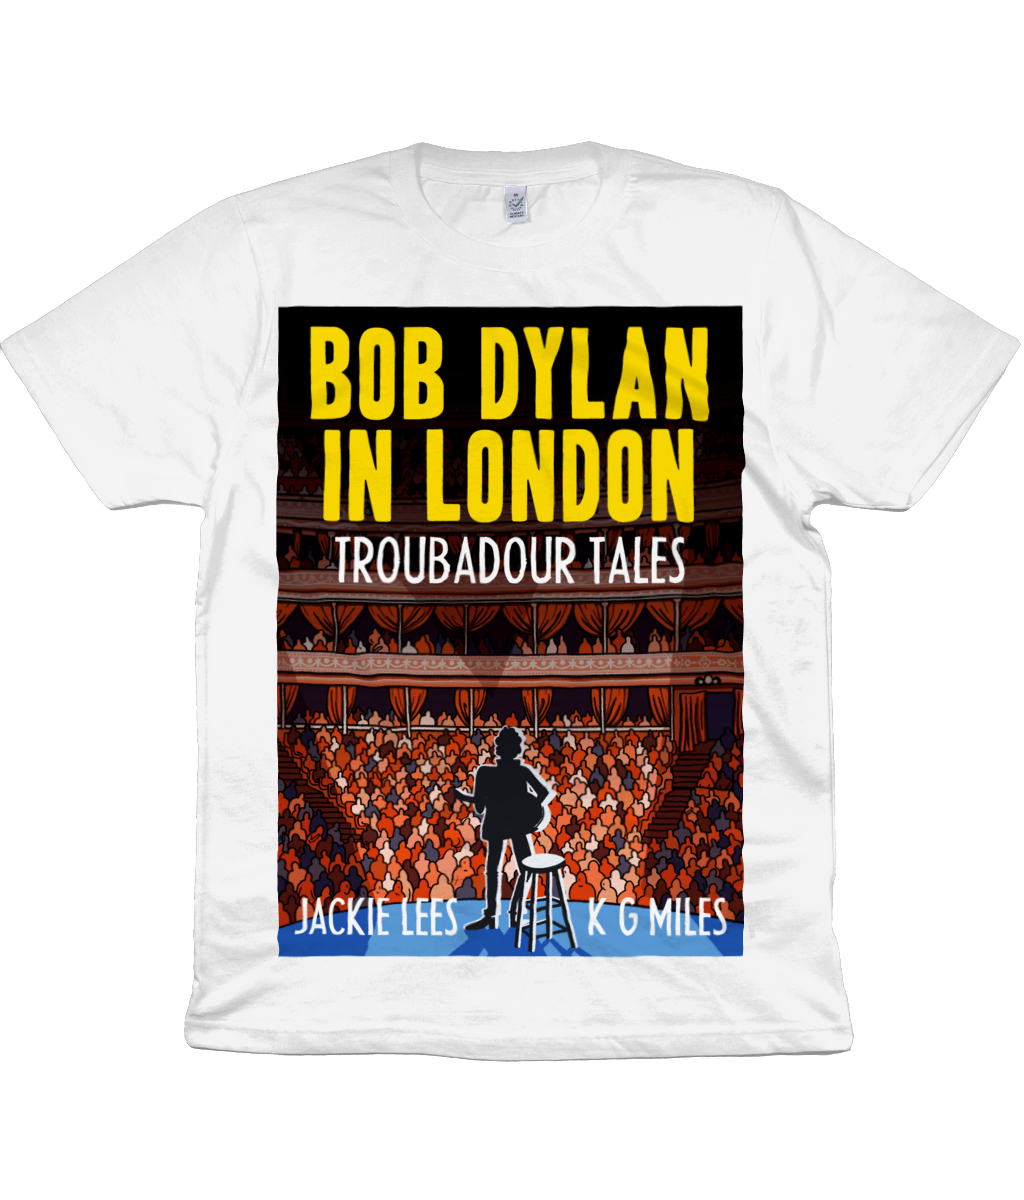 BOB DYLAN IN LONDON - TROUBADOUR TALES – DEAD POSH